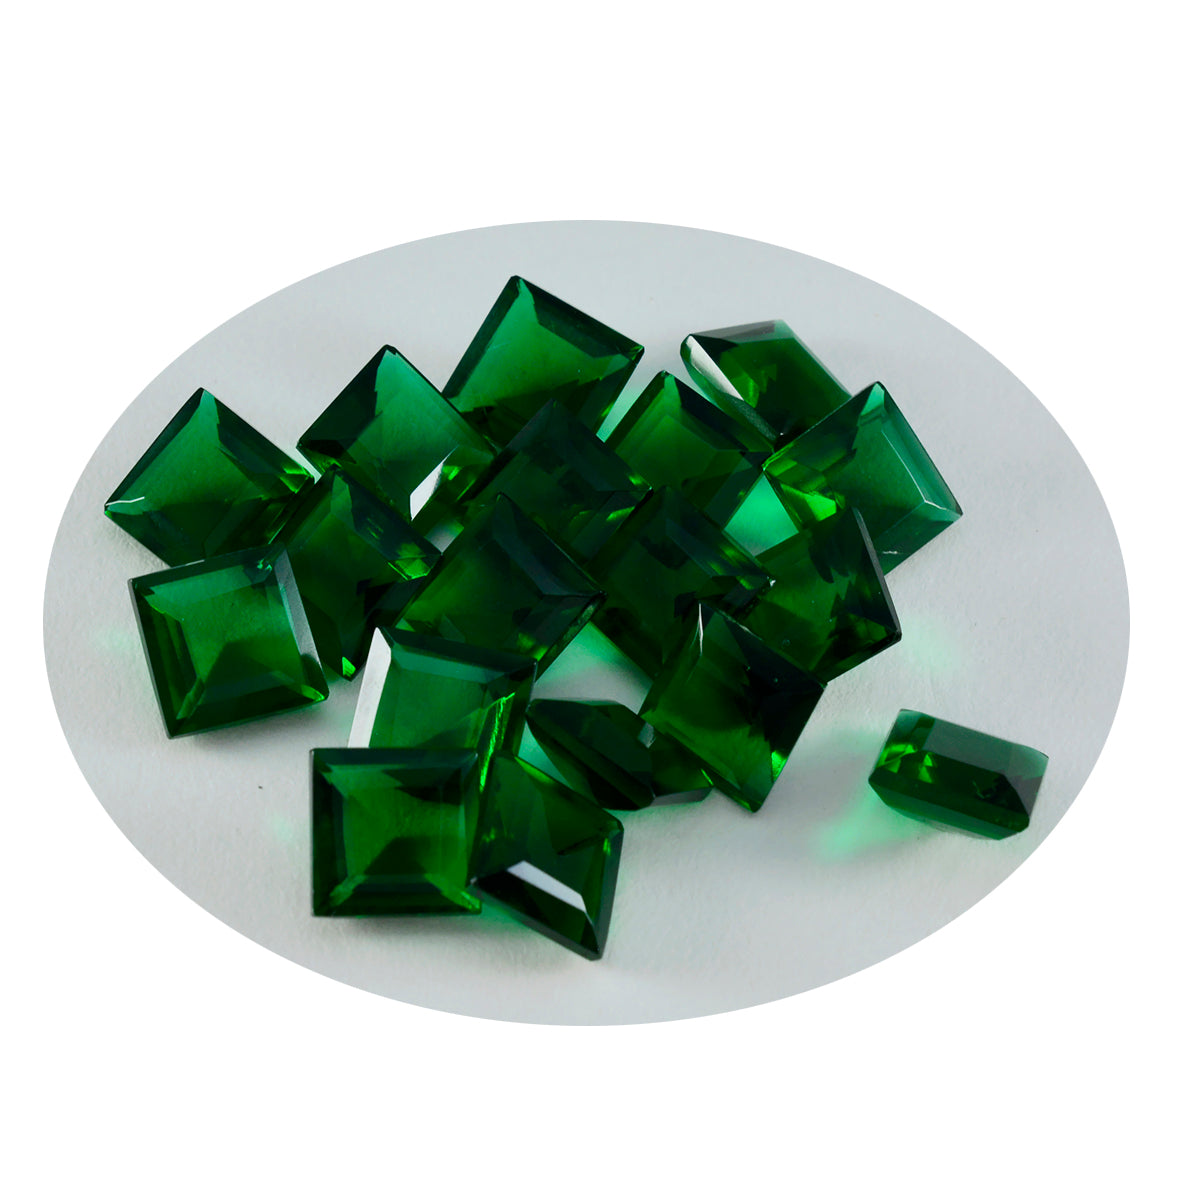 Riyogems 1 Stück grüner Smaragd, CZ, facettiert, 8 x 8 mm, quadratische Form, hübsche Qualitätsedelsteine